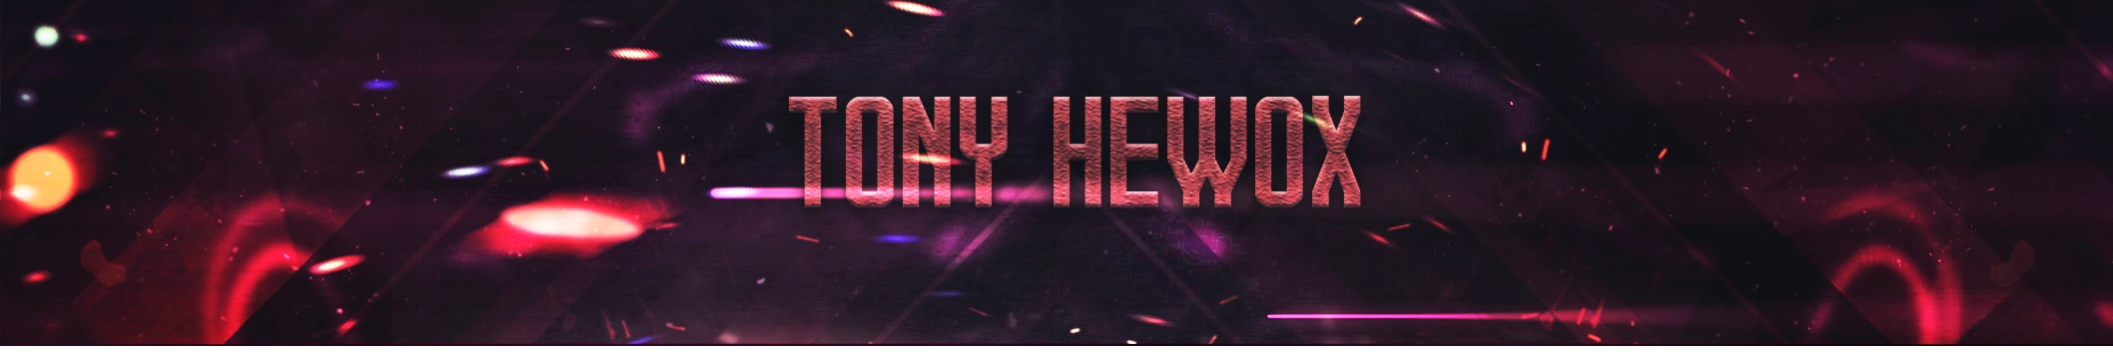 Tony Hewox